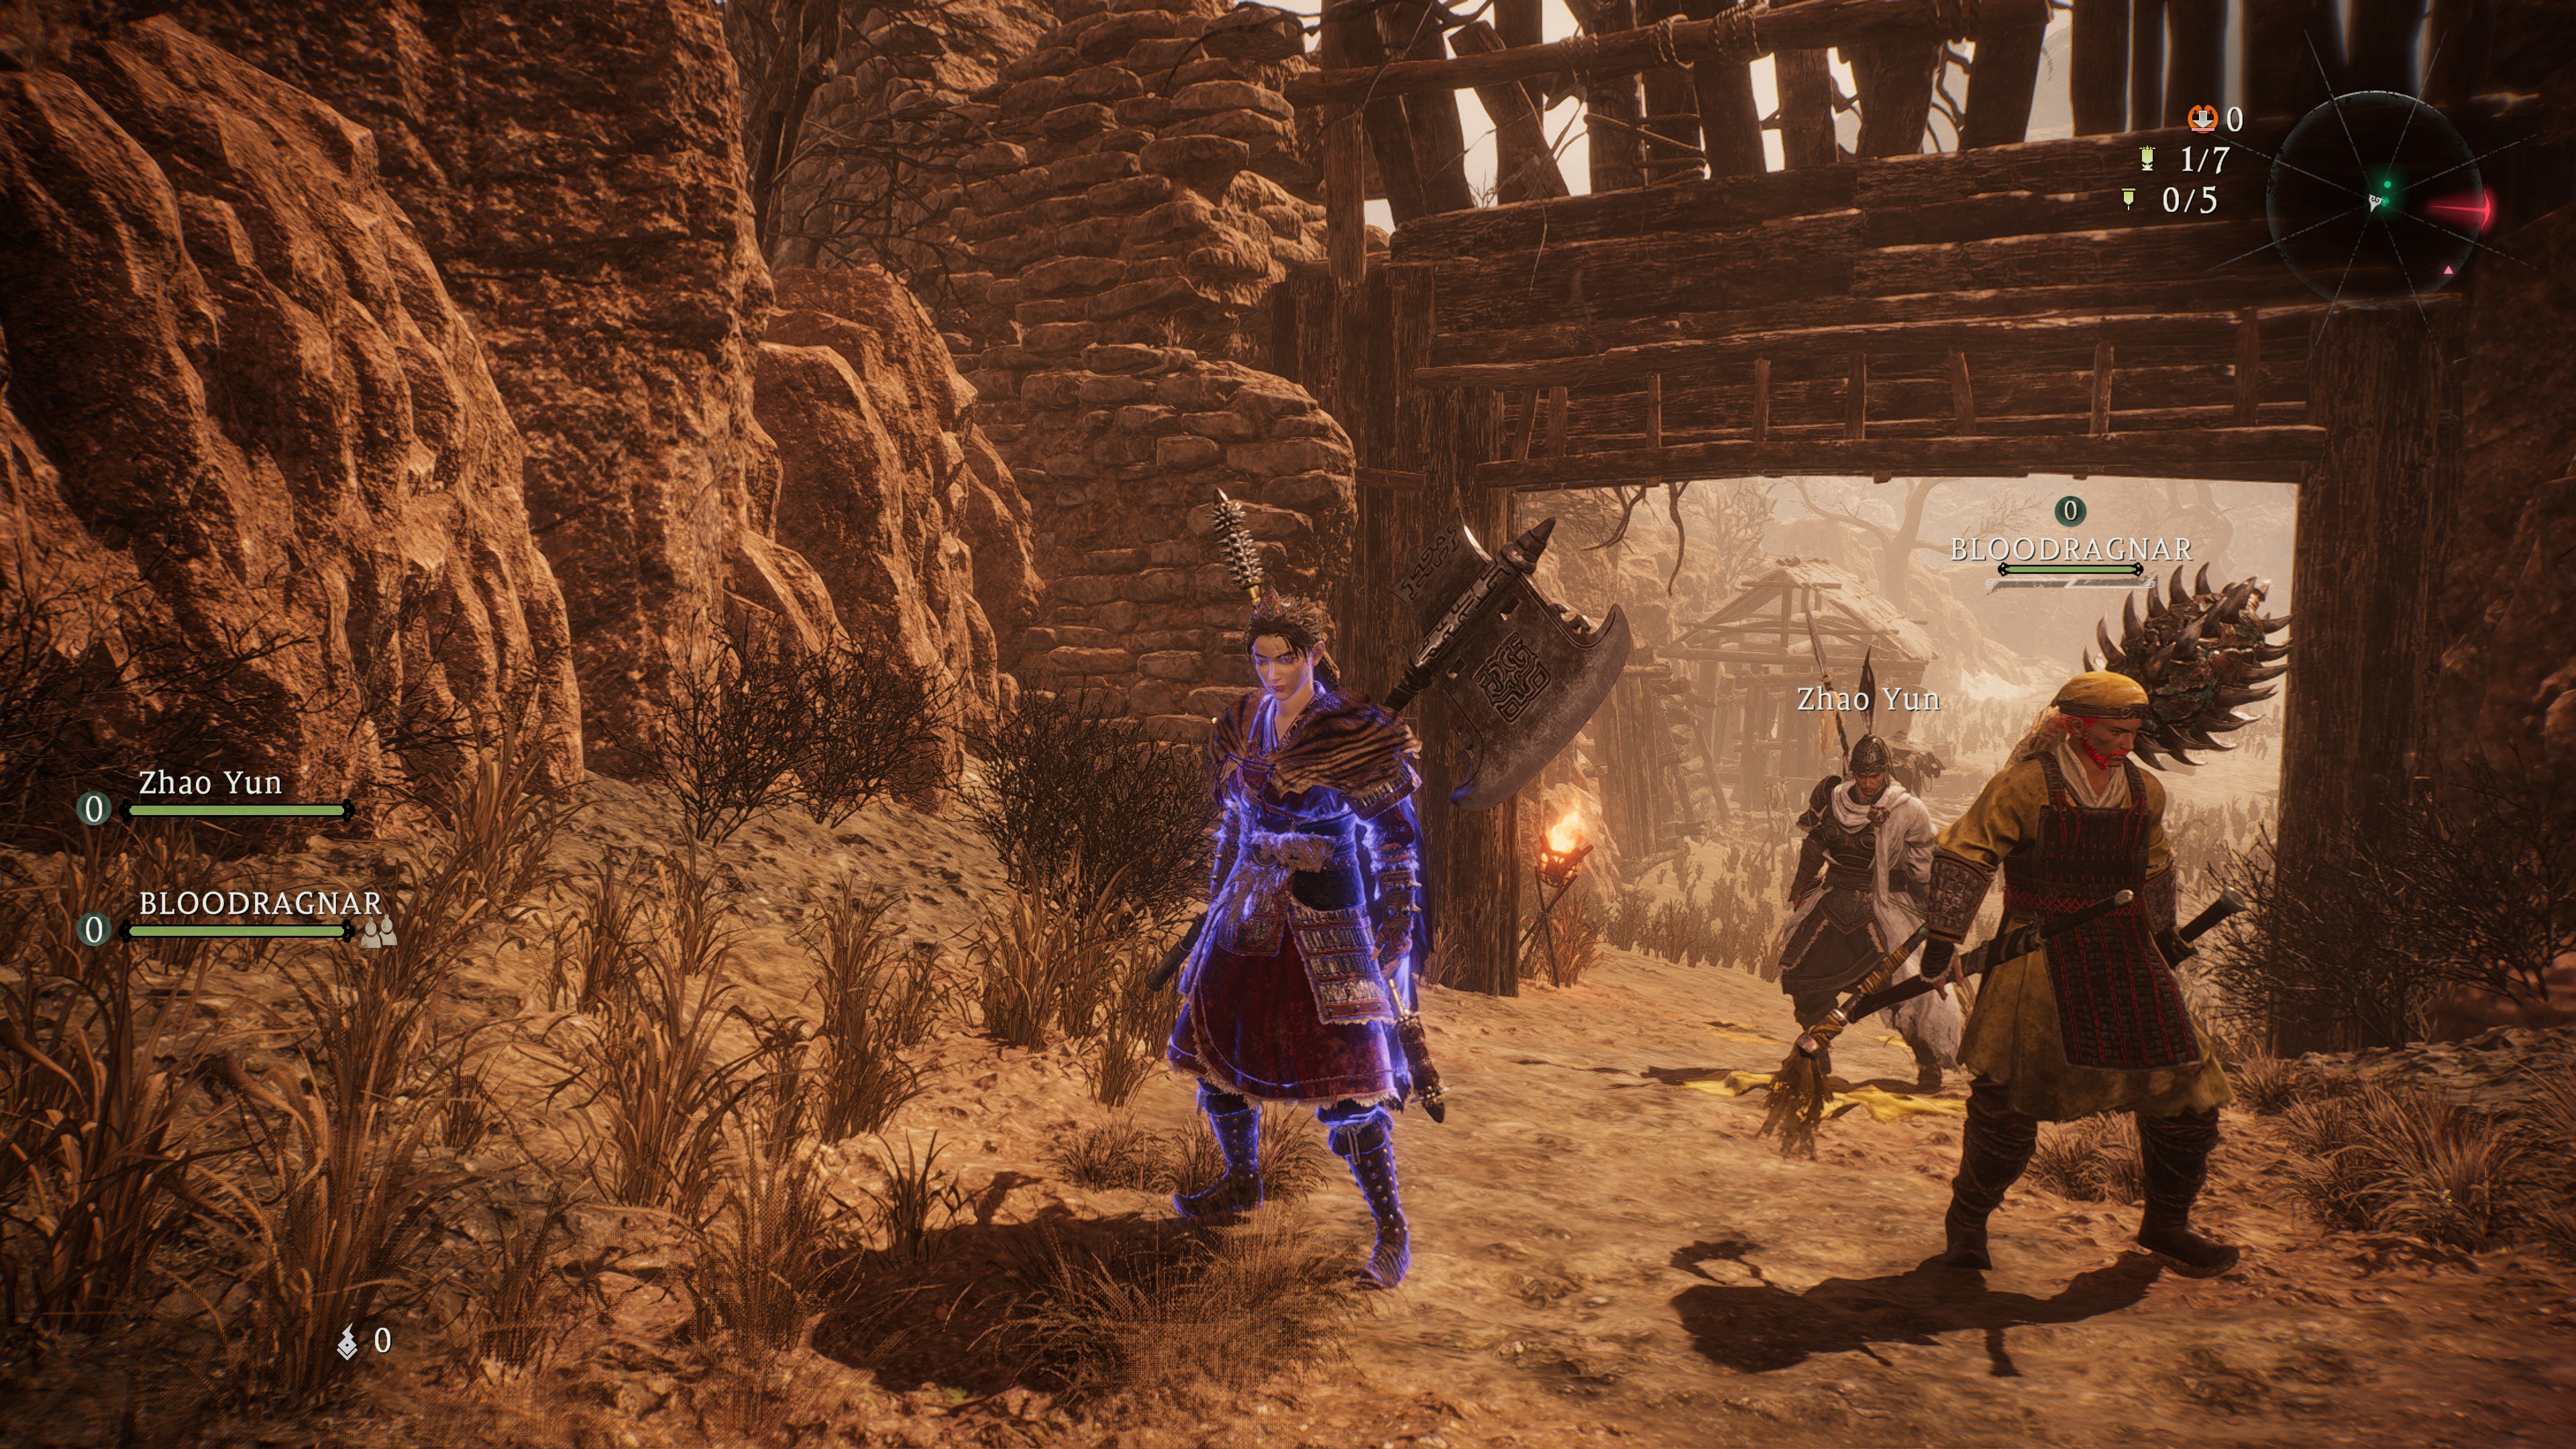 Внутриигровой скриншот Wo Long: Fallen Dynasty, на котором игрок отвечает на запрос о рекруте.